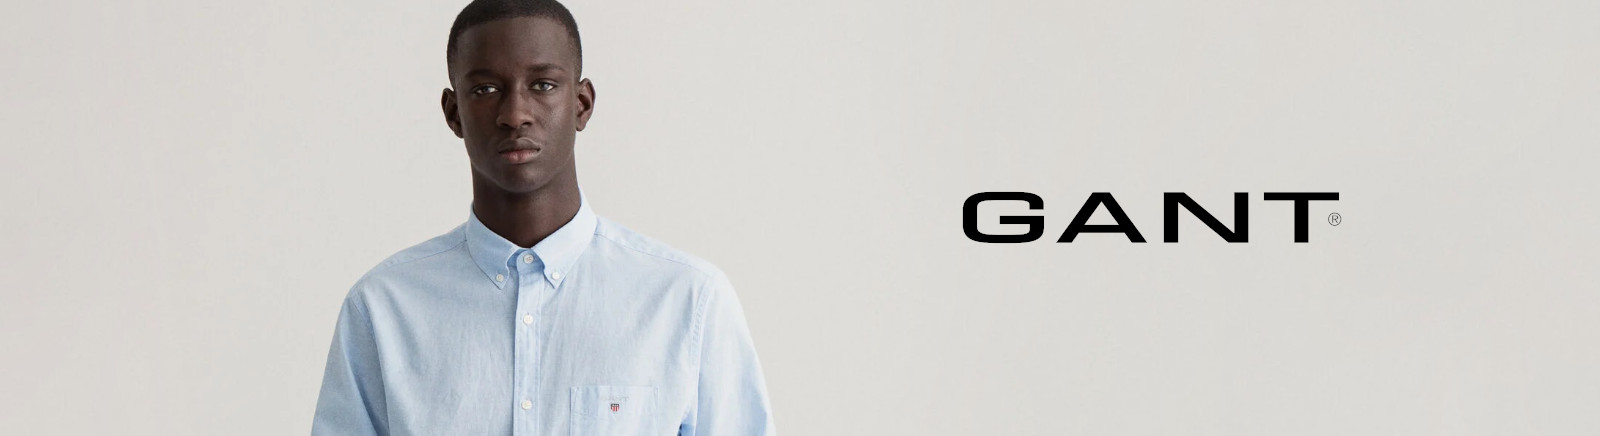 Gant Herrenschuhe online kaufen im Shop von GISY